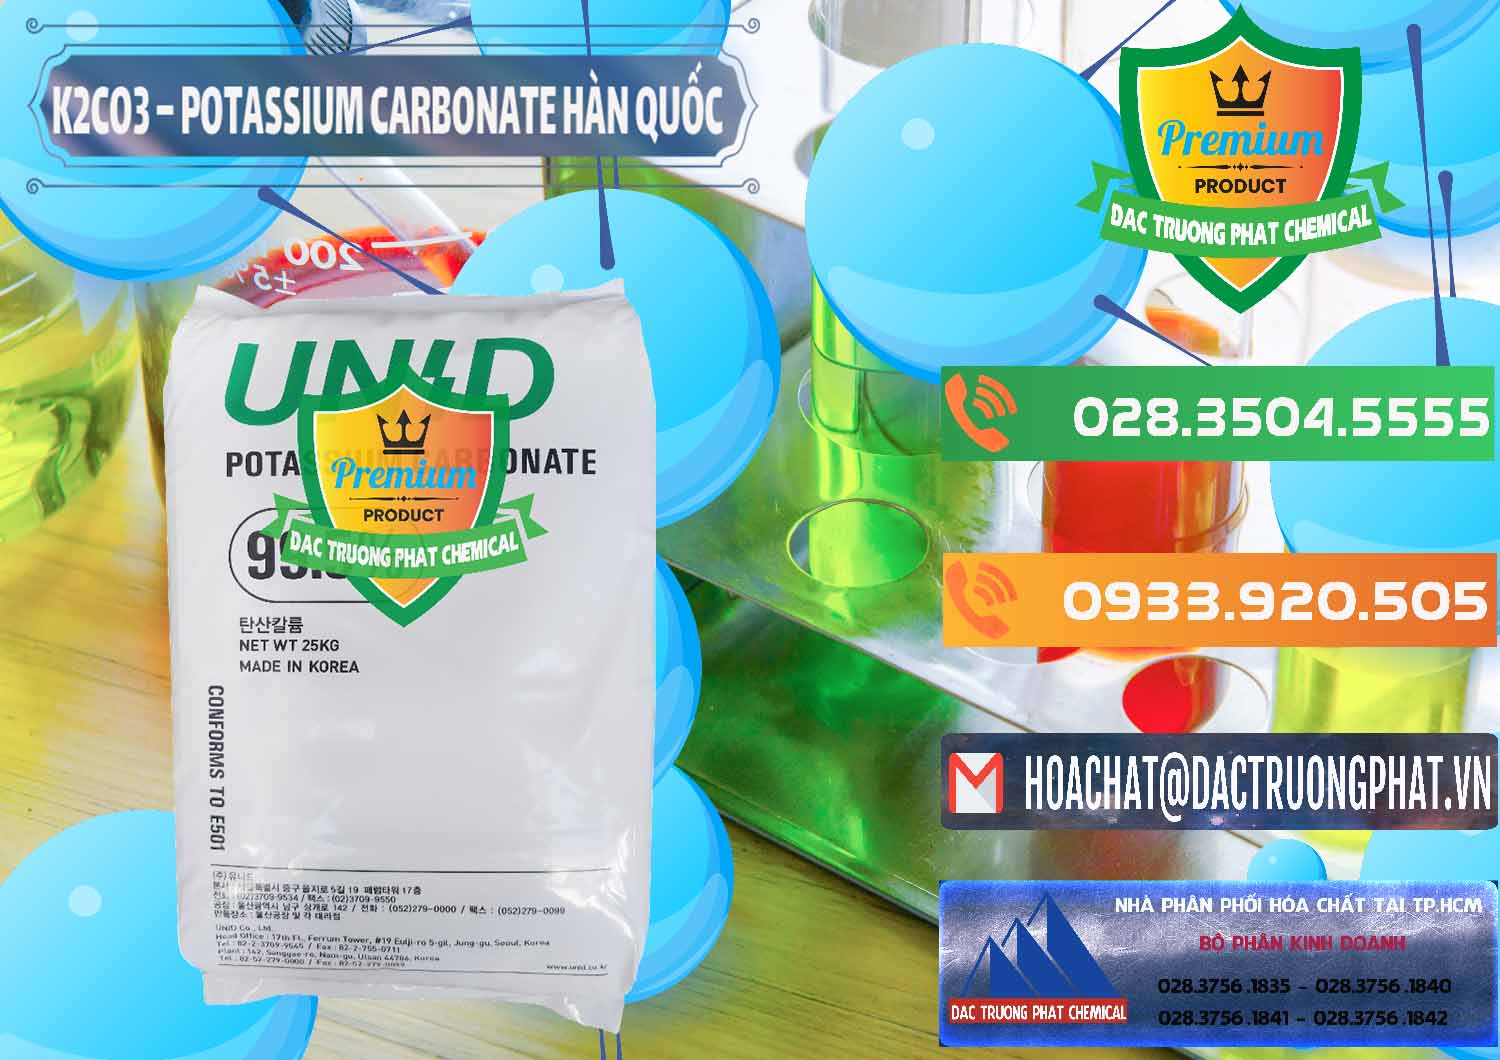 Cty kinh doanh & bán K2Co3 – Potassium Carbonate Unid Hàn Quốc Korea - 0081 - Cty cung cấp & nhập khẩu hóa chất tại TP.HCM - hoachatxulynuoc.com.vn